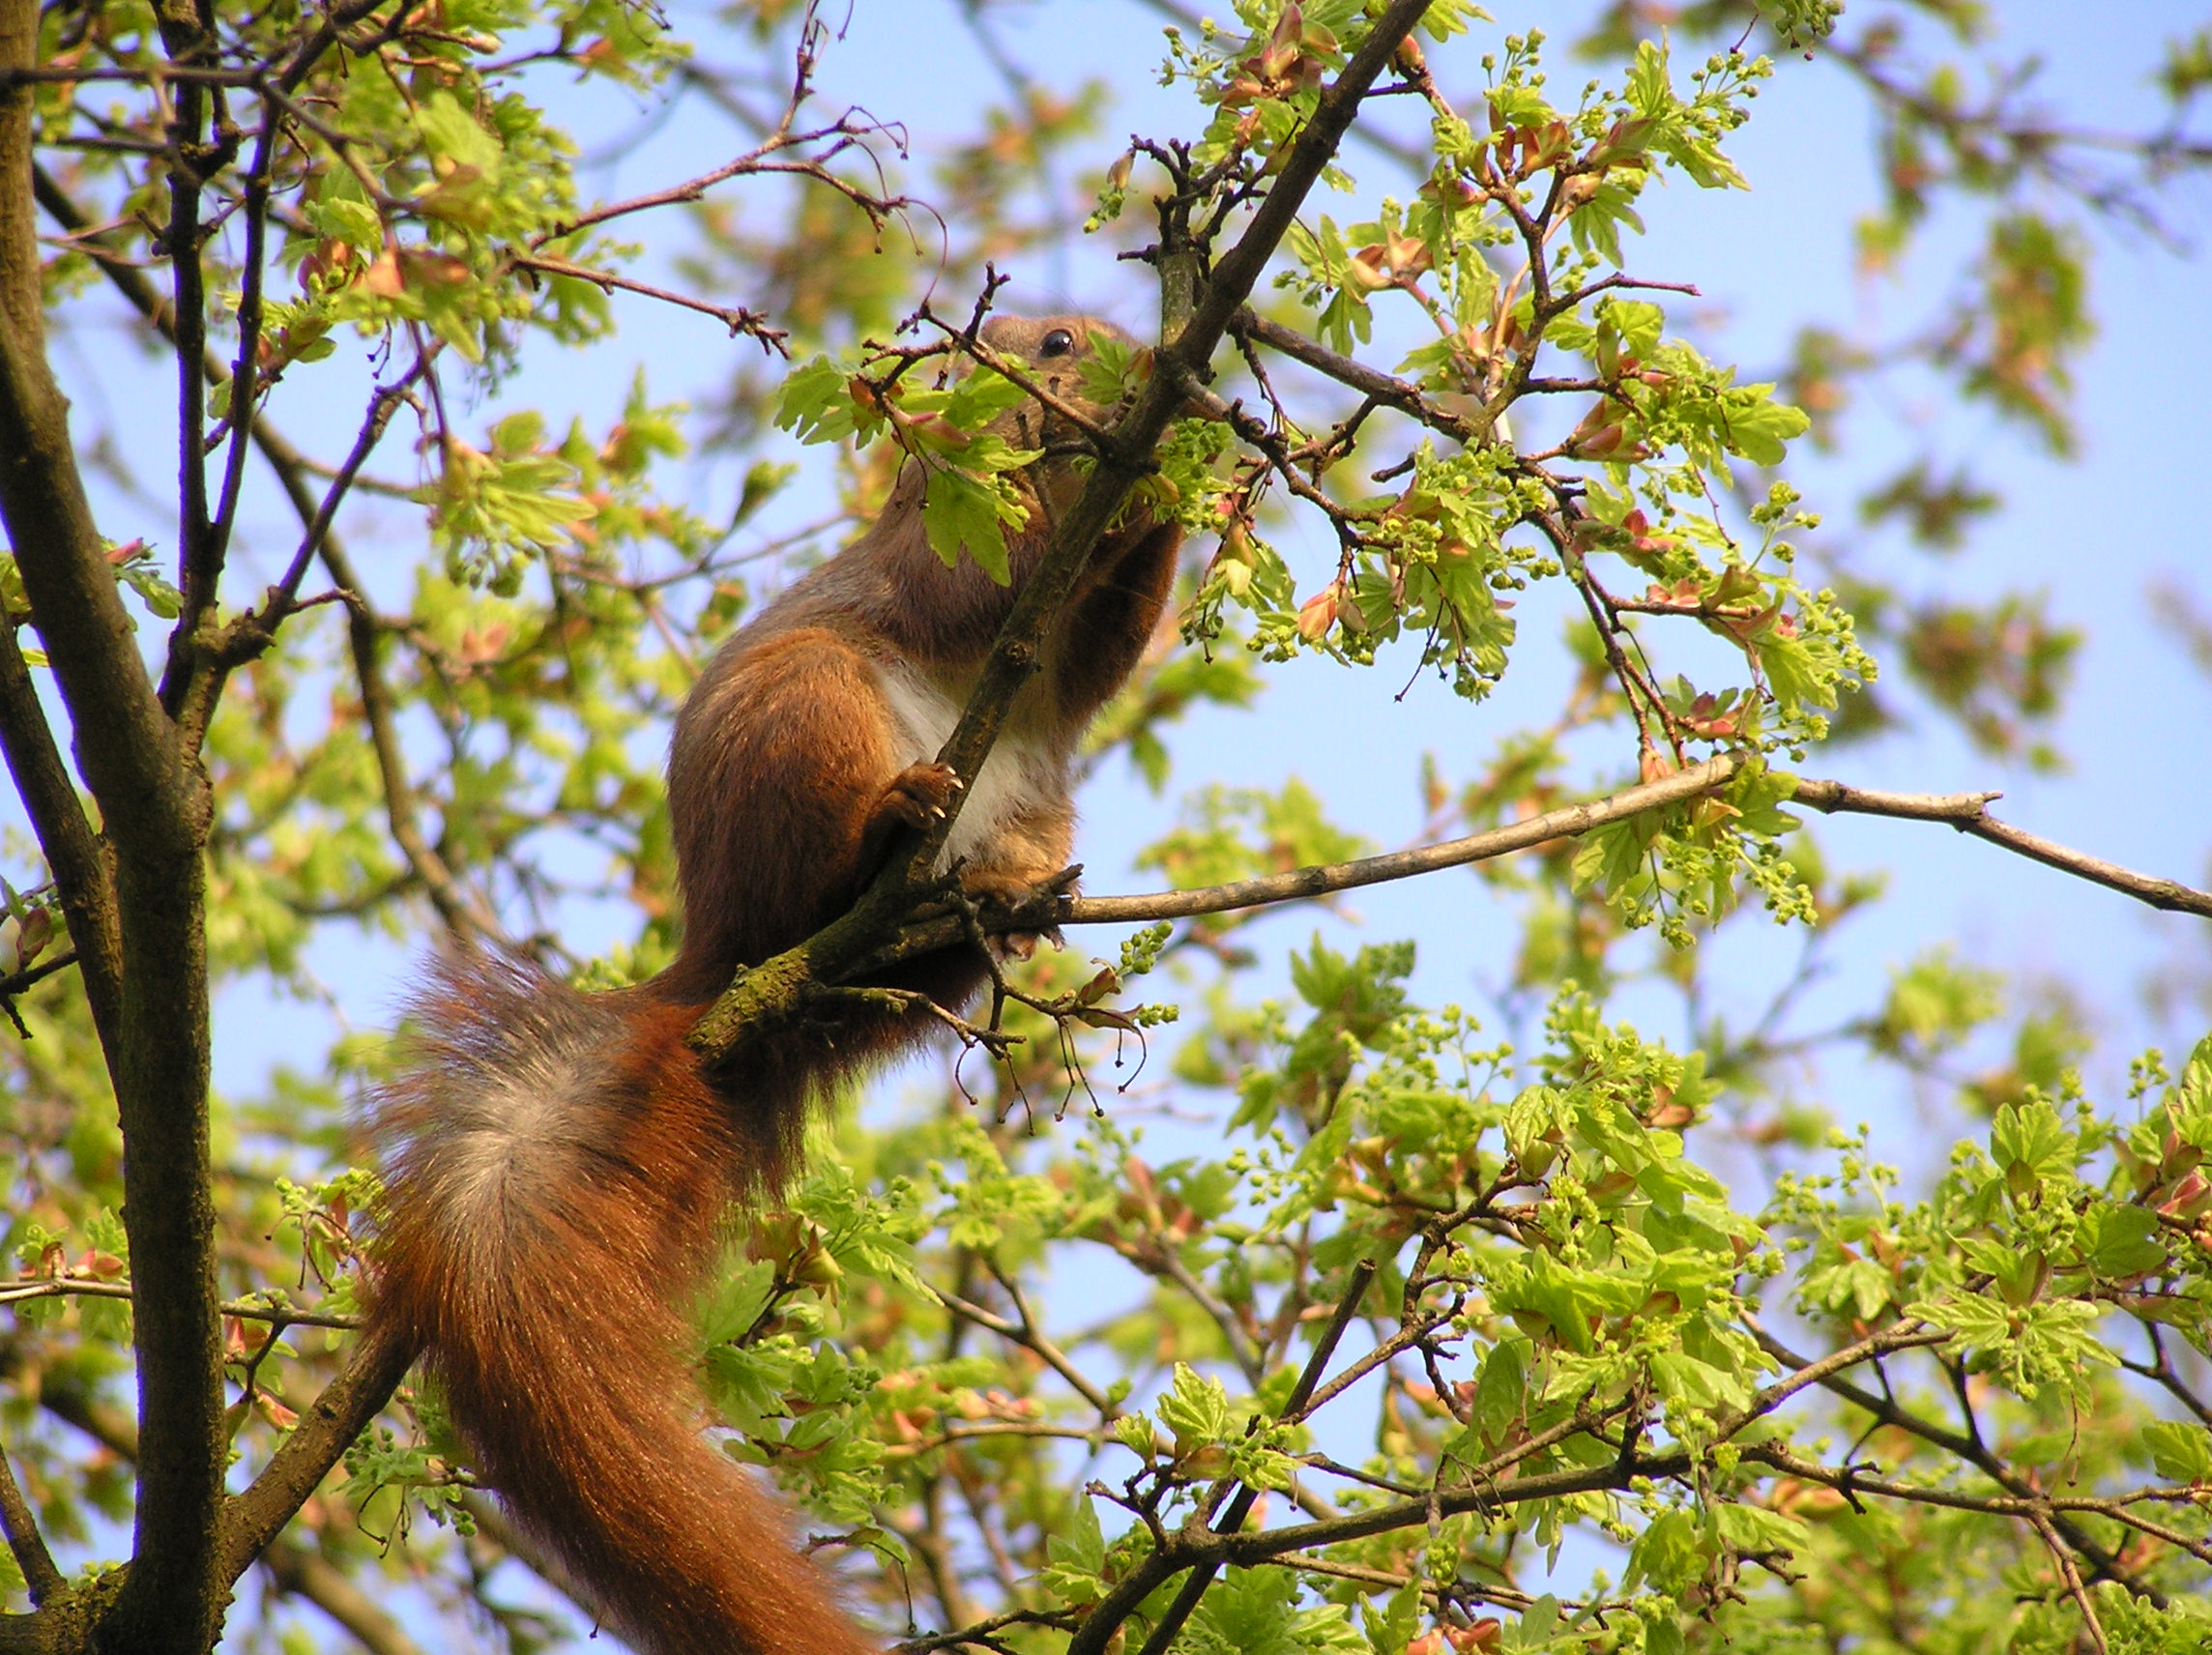 photos von einem eichhörnchen im baum